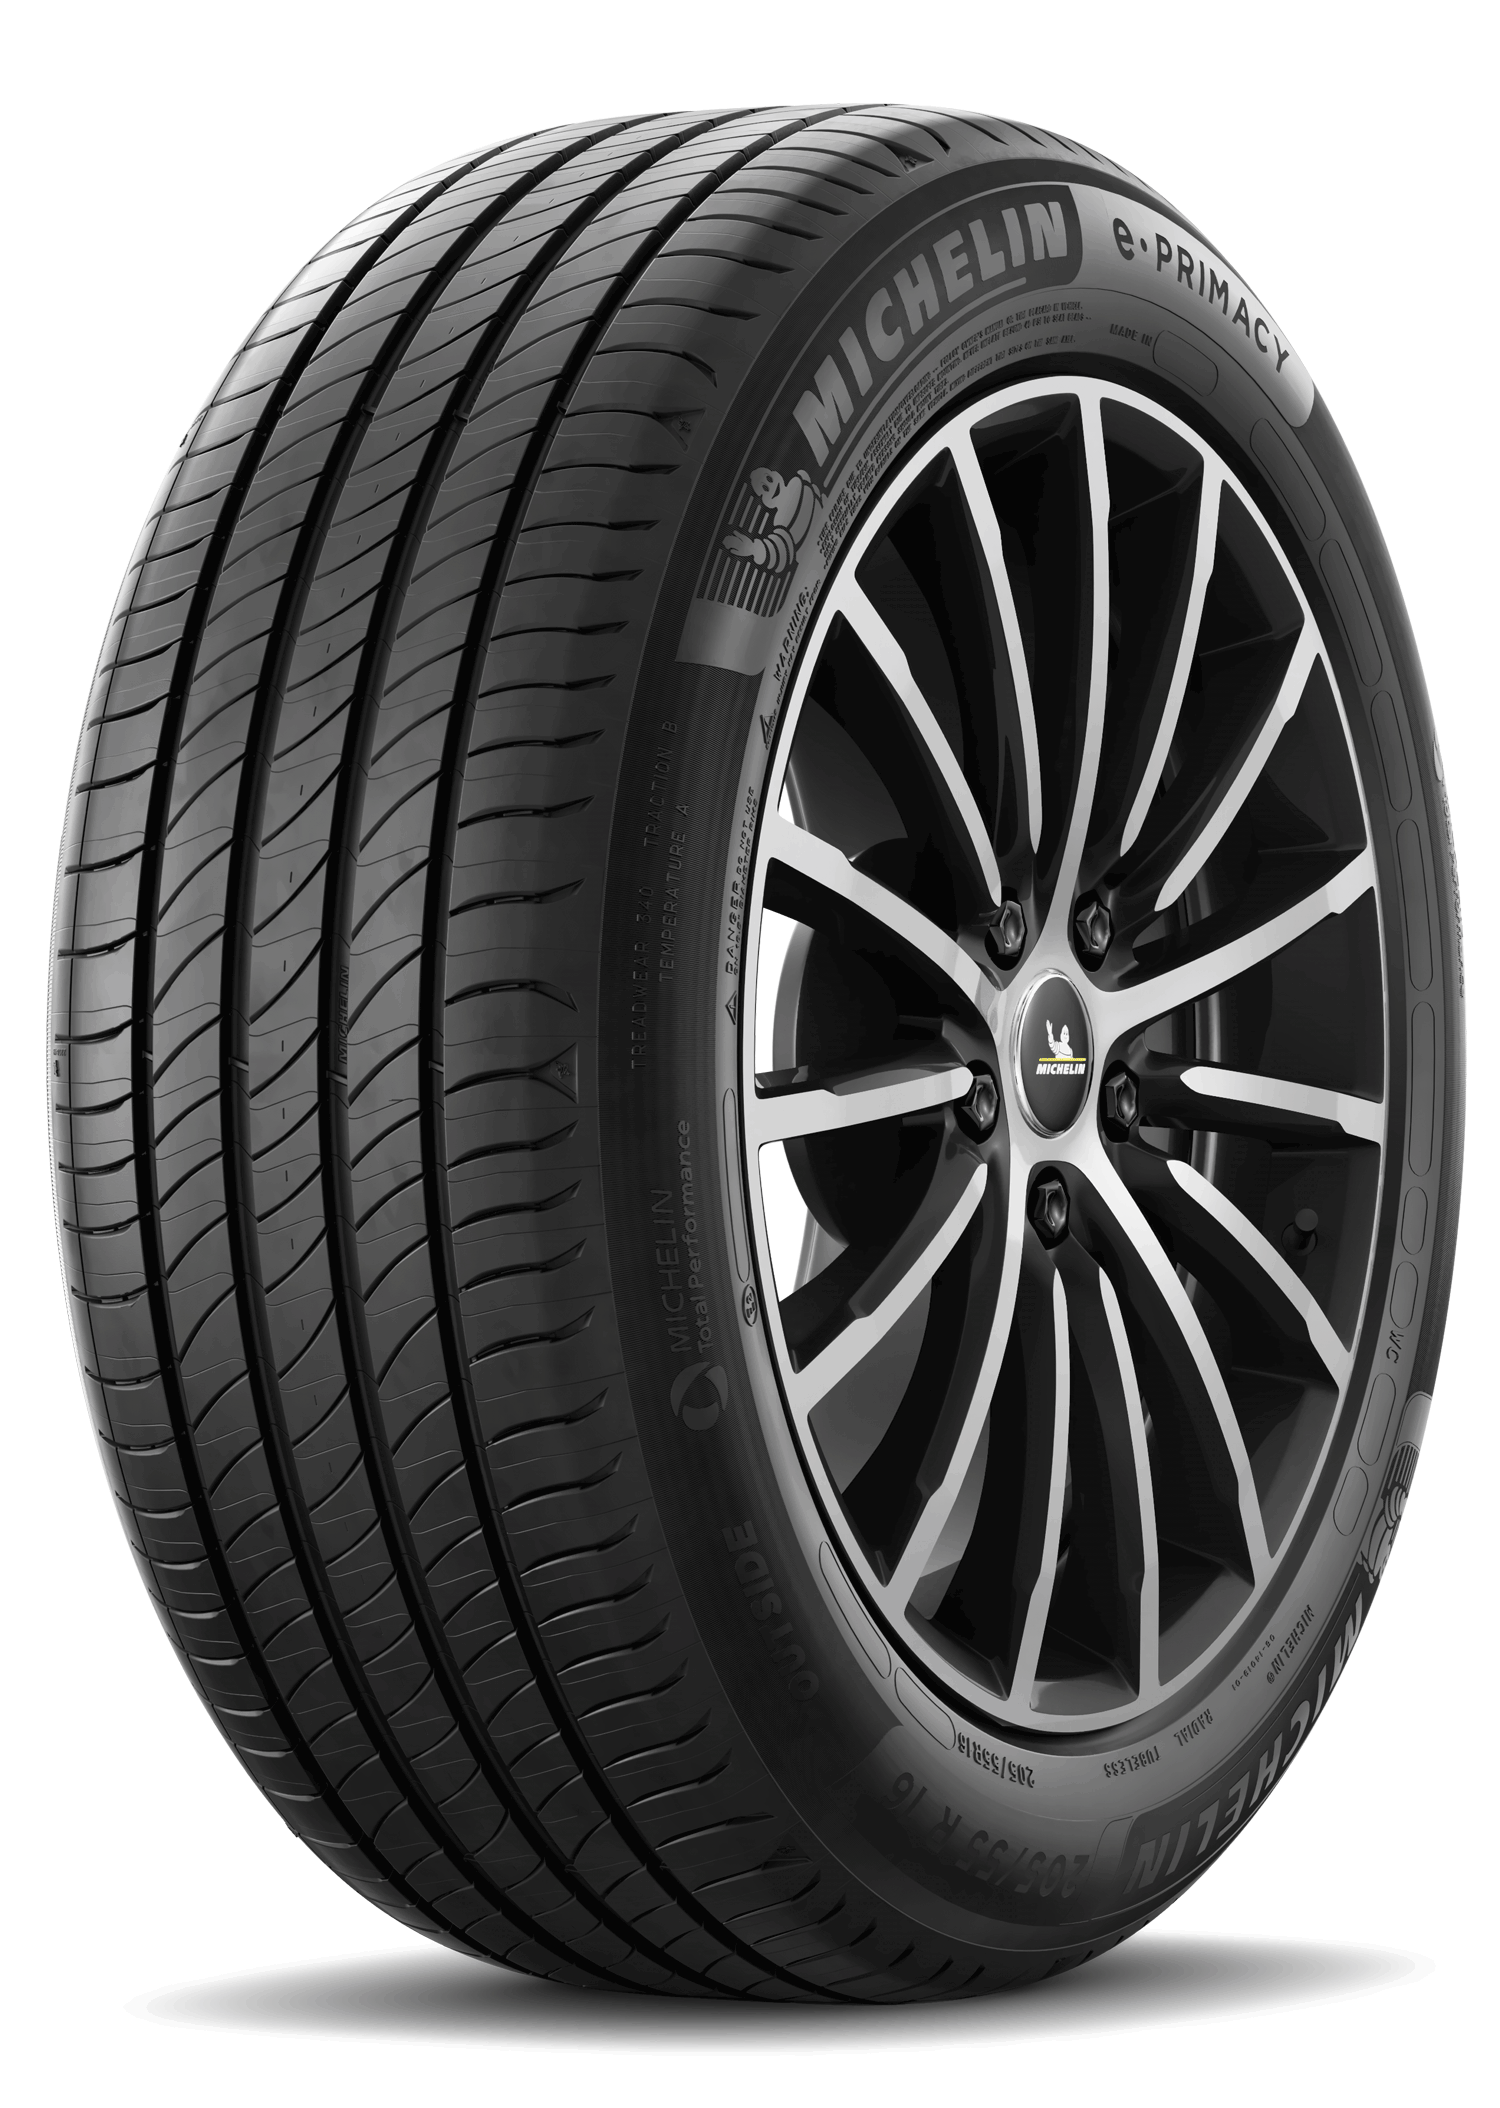 Gomme Nuove Michelin 245/45 R18 100W E PRIMACY XL pneumatici nuovi Estivo